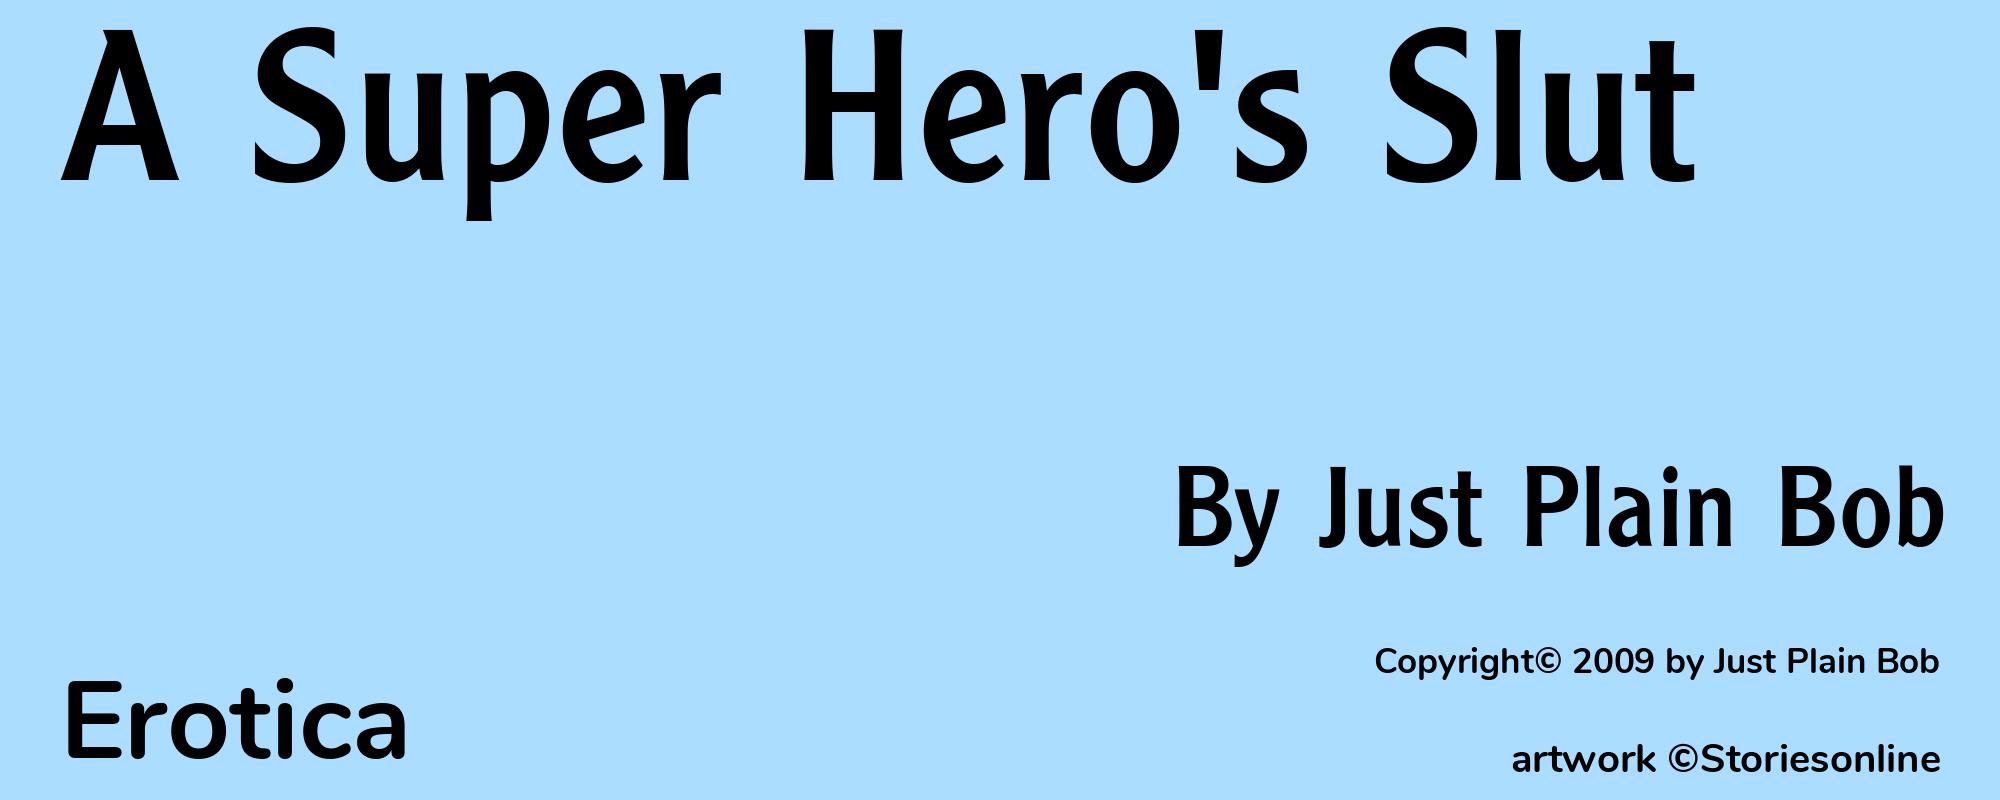 A Super Hero's Slut - Cover